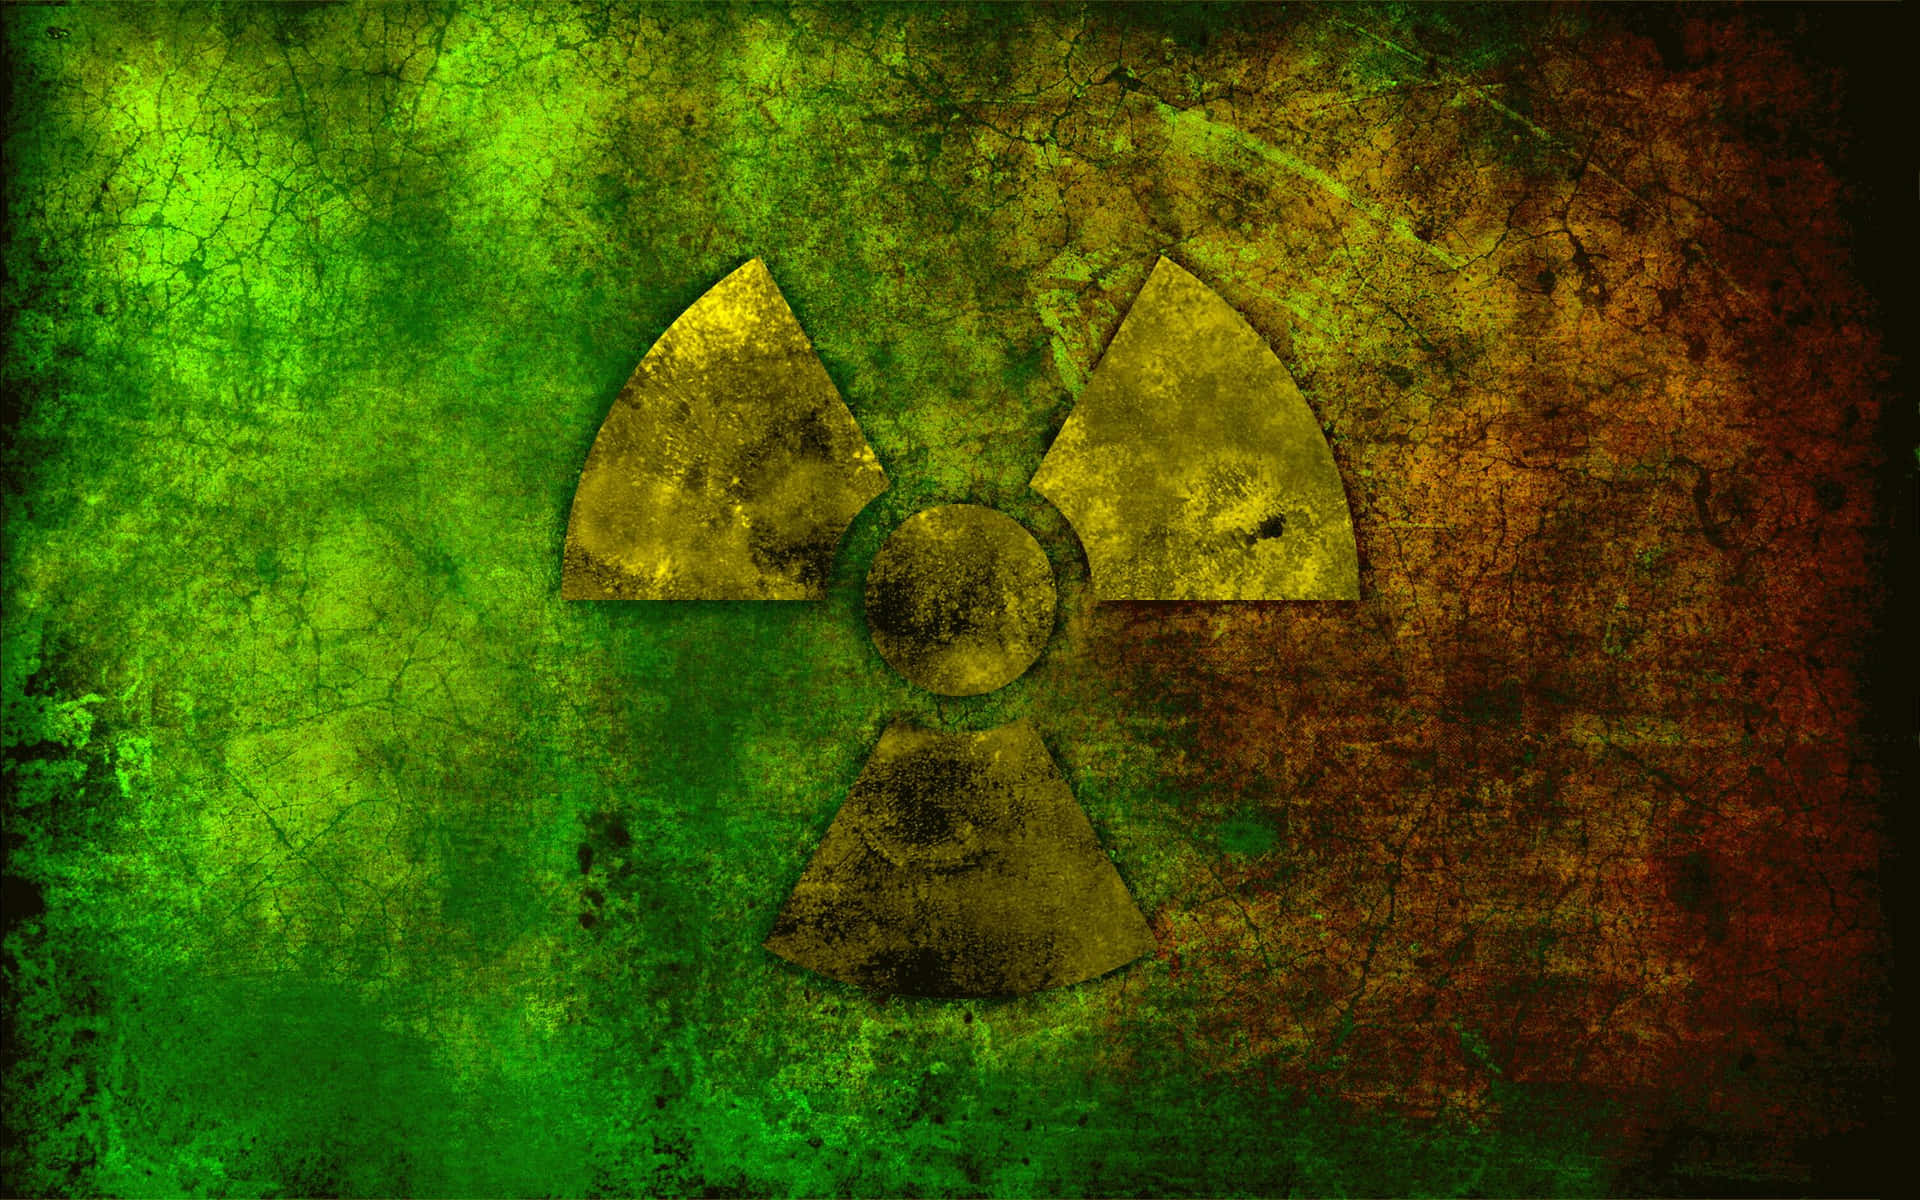 Einradioaktives Symbol Auf Einem Grün-braunen Hintergrund.